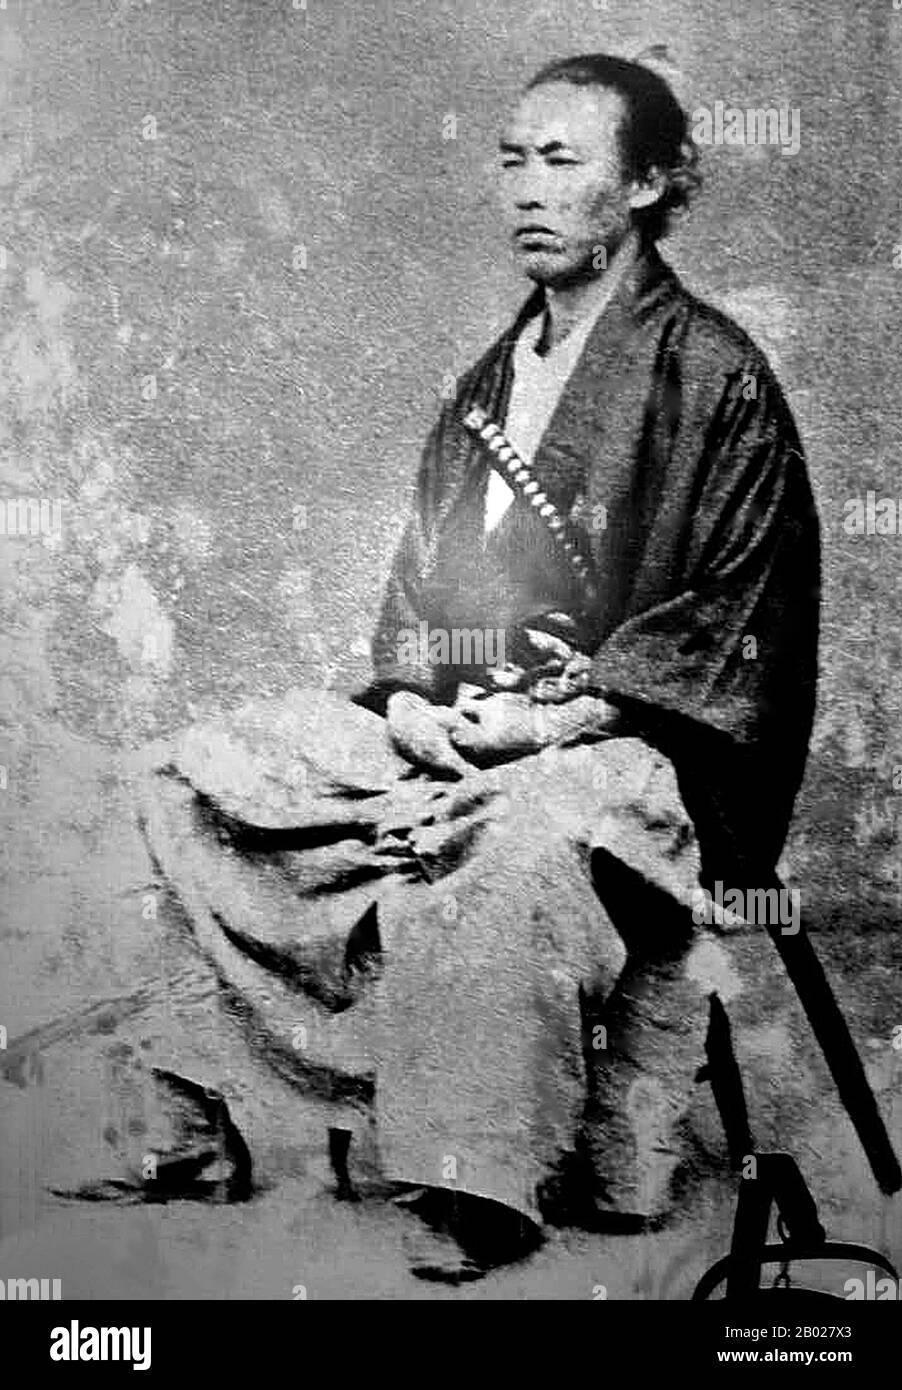 Ueno Hikoma (上野 彦馬, 15. Oktober 1838 - 22. Mai 1904/05) war ein japanischer Pionierfotograf, geboren in Nagasaki. Er ist für seine feinen Porträts, oft von bedeutenden japanischen und ausländischen Persönlichkeiten, und für seine hervorragenden Landschaften, insbesondere von Nagasaki und seiner Umgebung, bekannt. Ueno war eine bedeutende Persönlichkeit der japanischen Fotografie im 19. Jahrhundert als kommerziell und künstlerisch erfolgreicher Fotograf und als Ausbilder. Stockfoto